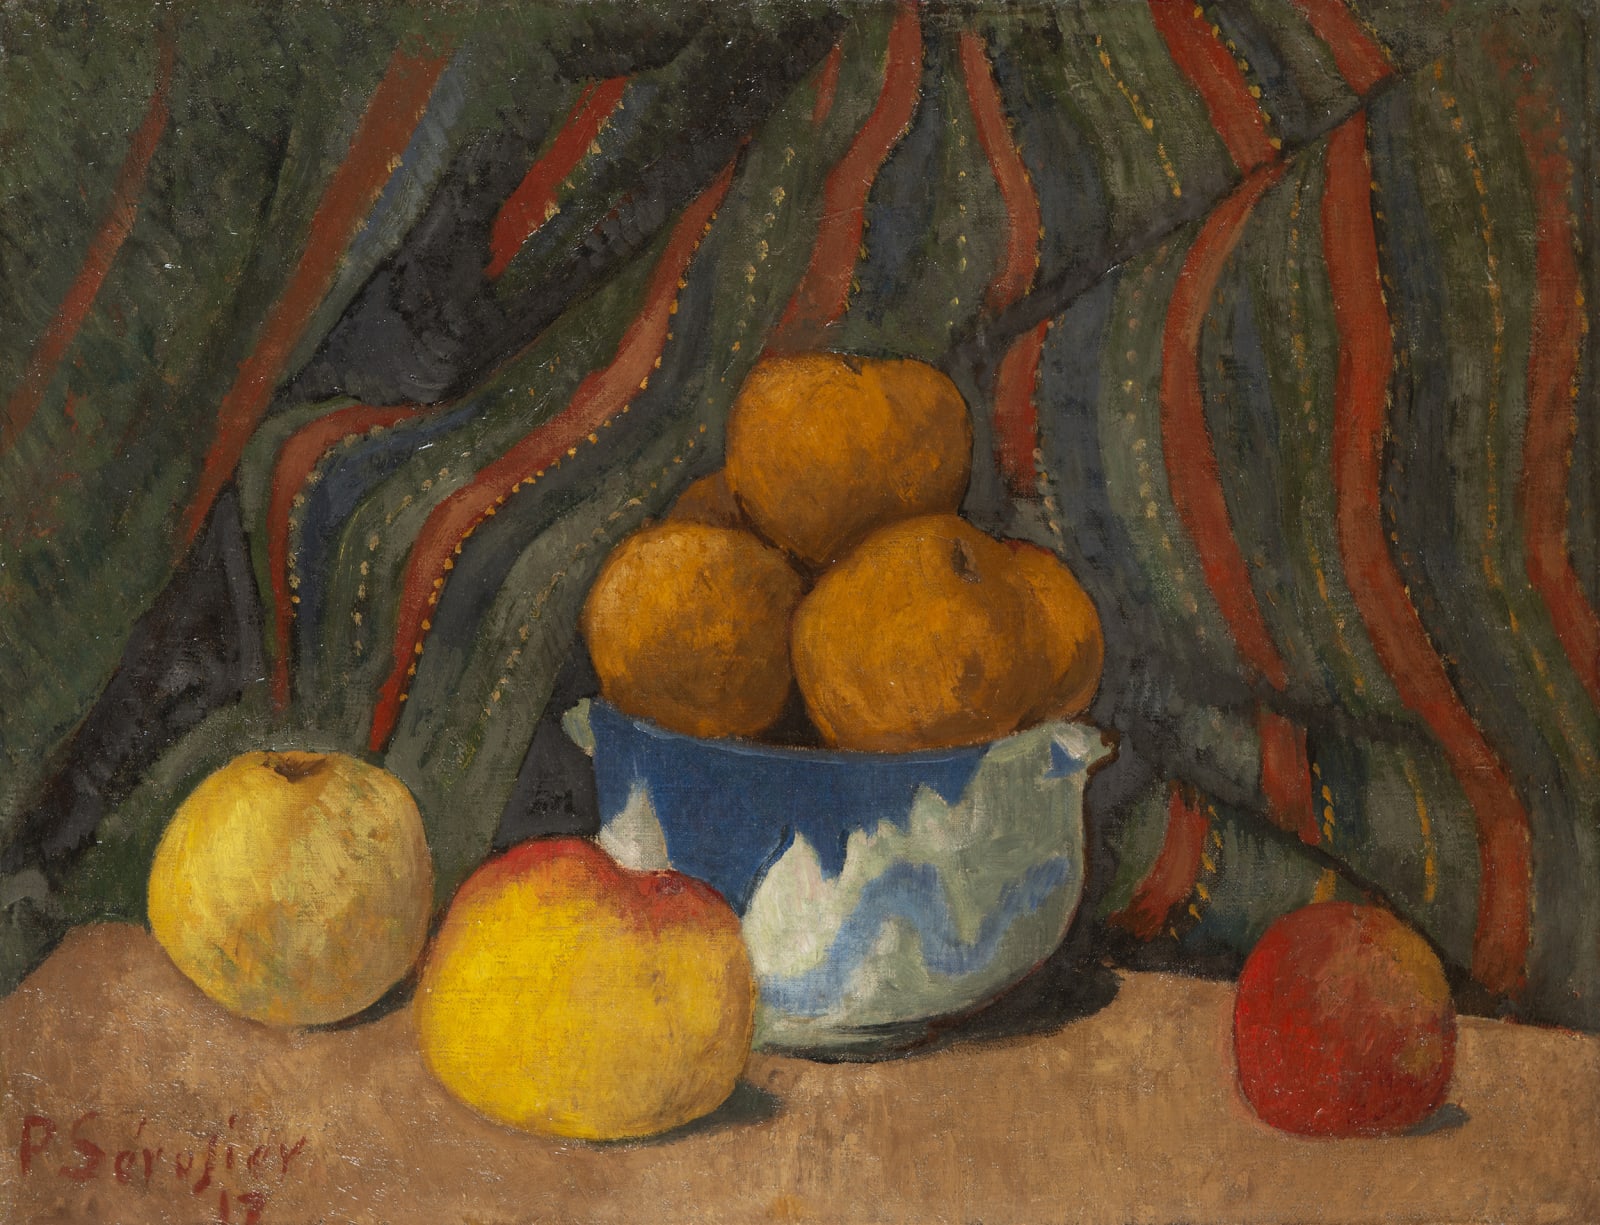 PAUL SÉRUSIER, Nature morte aux pommes sur fond de tenture rayée, 1912